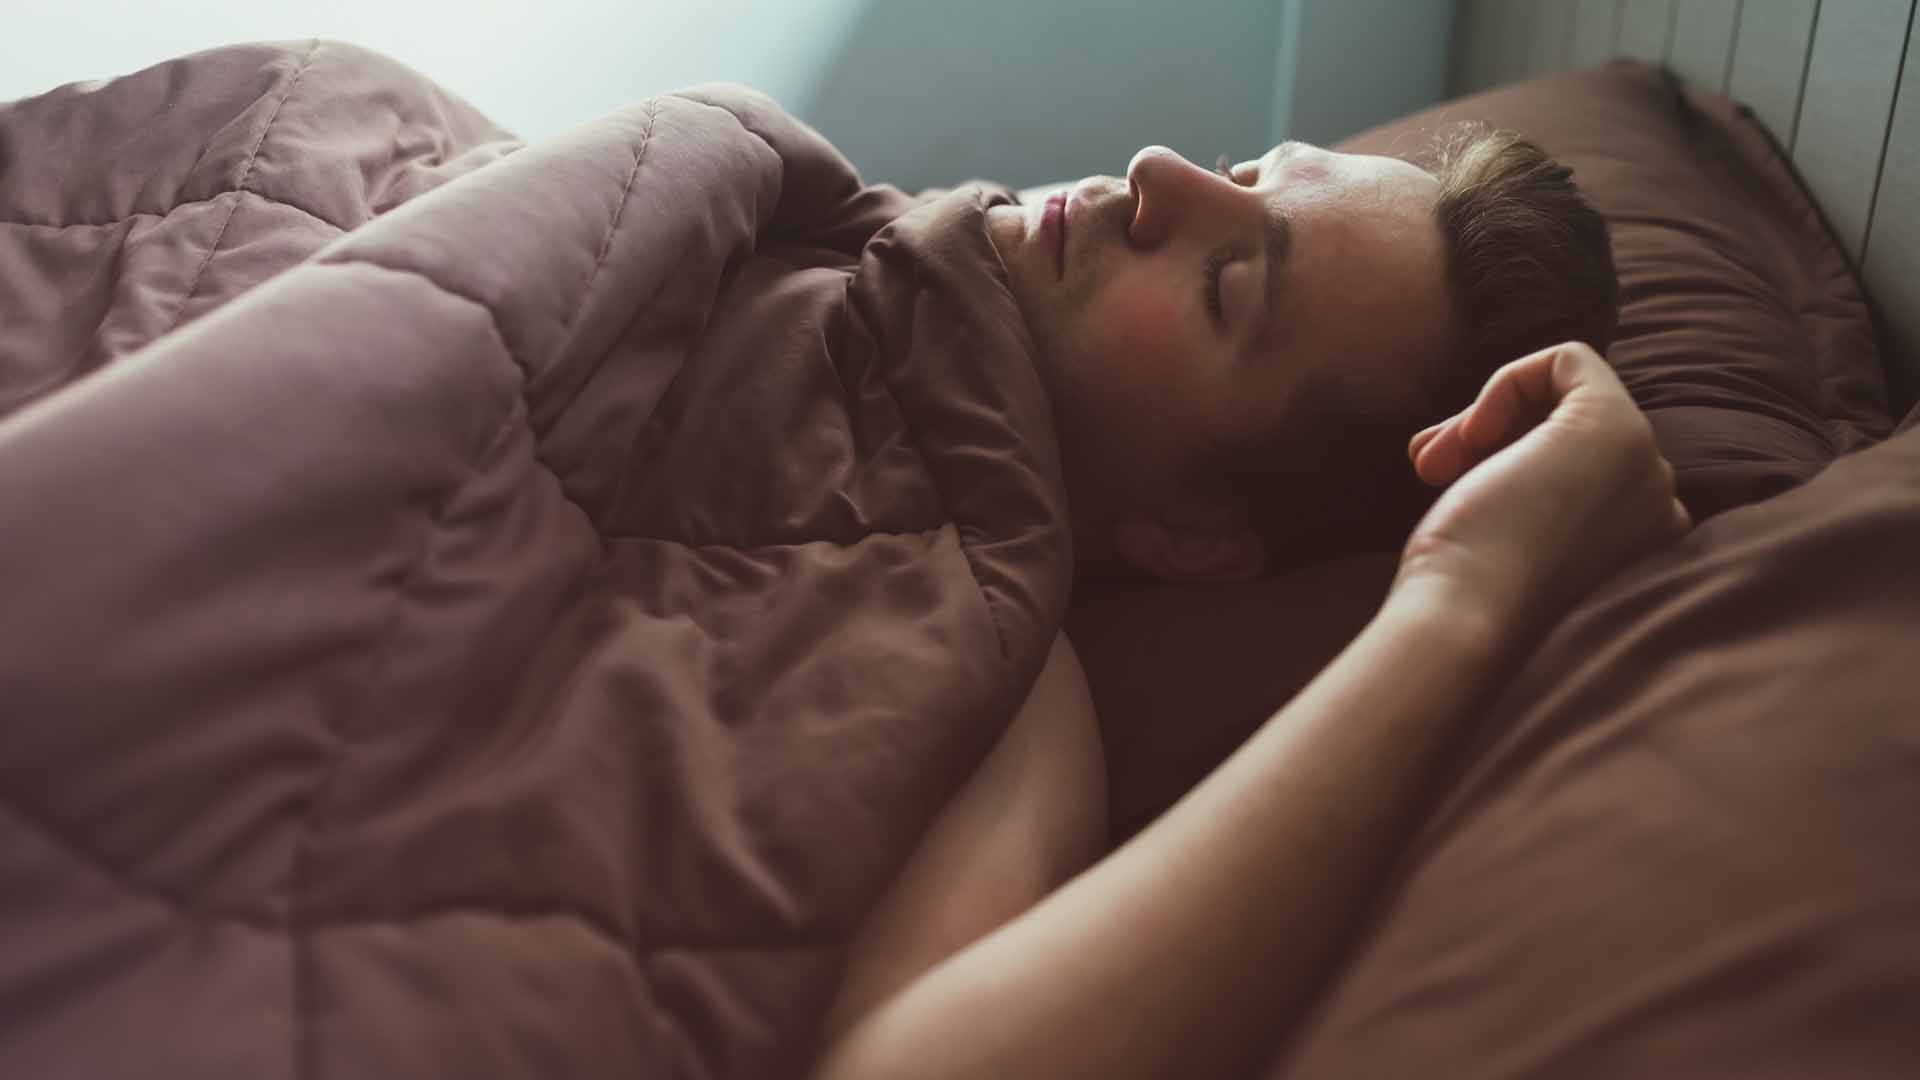 Az Uyku İle Zinde Kalmak Mümkün mü? Dinç Olmak